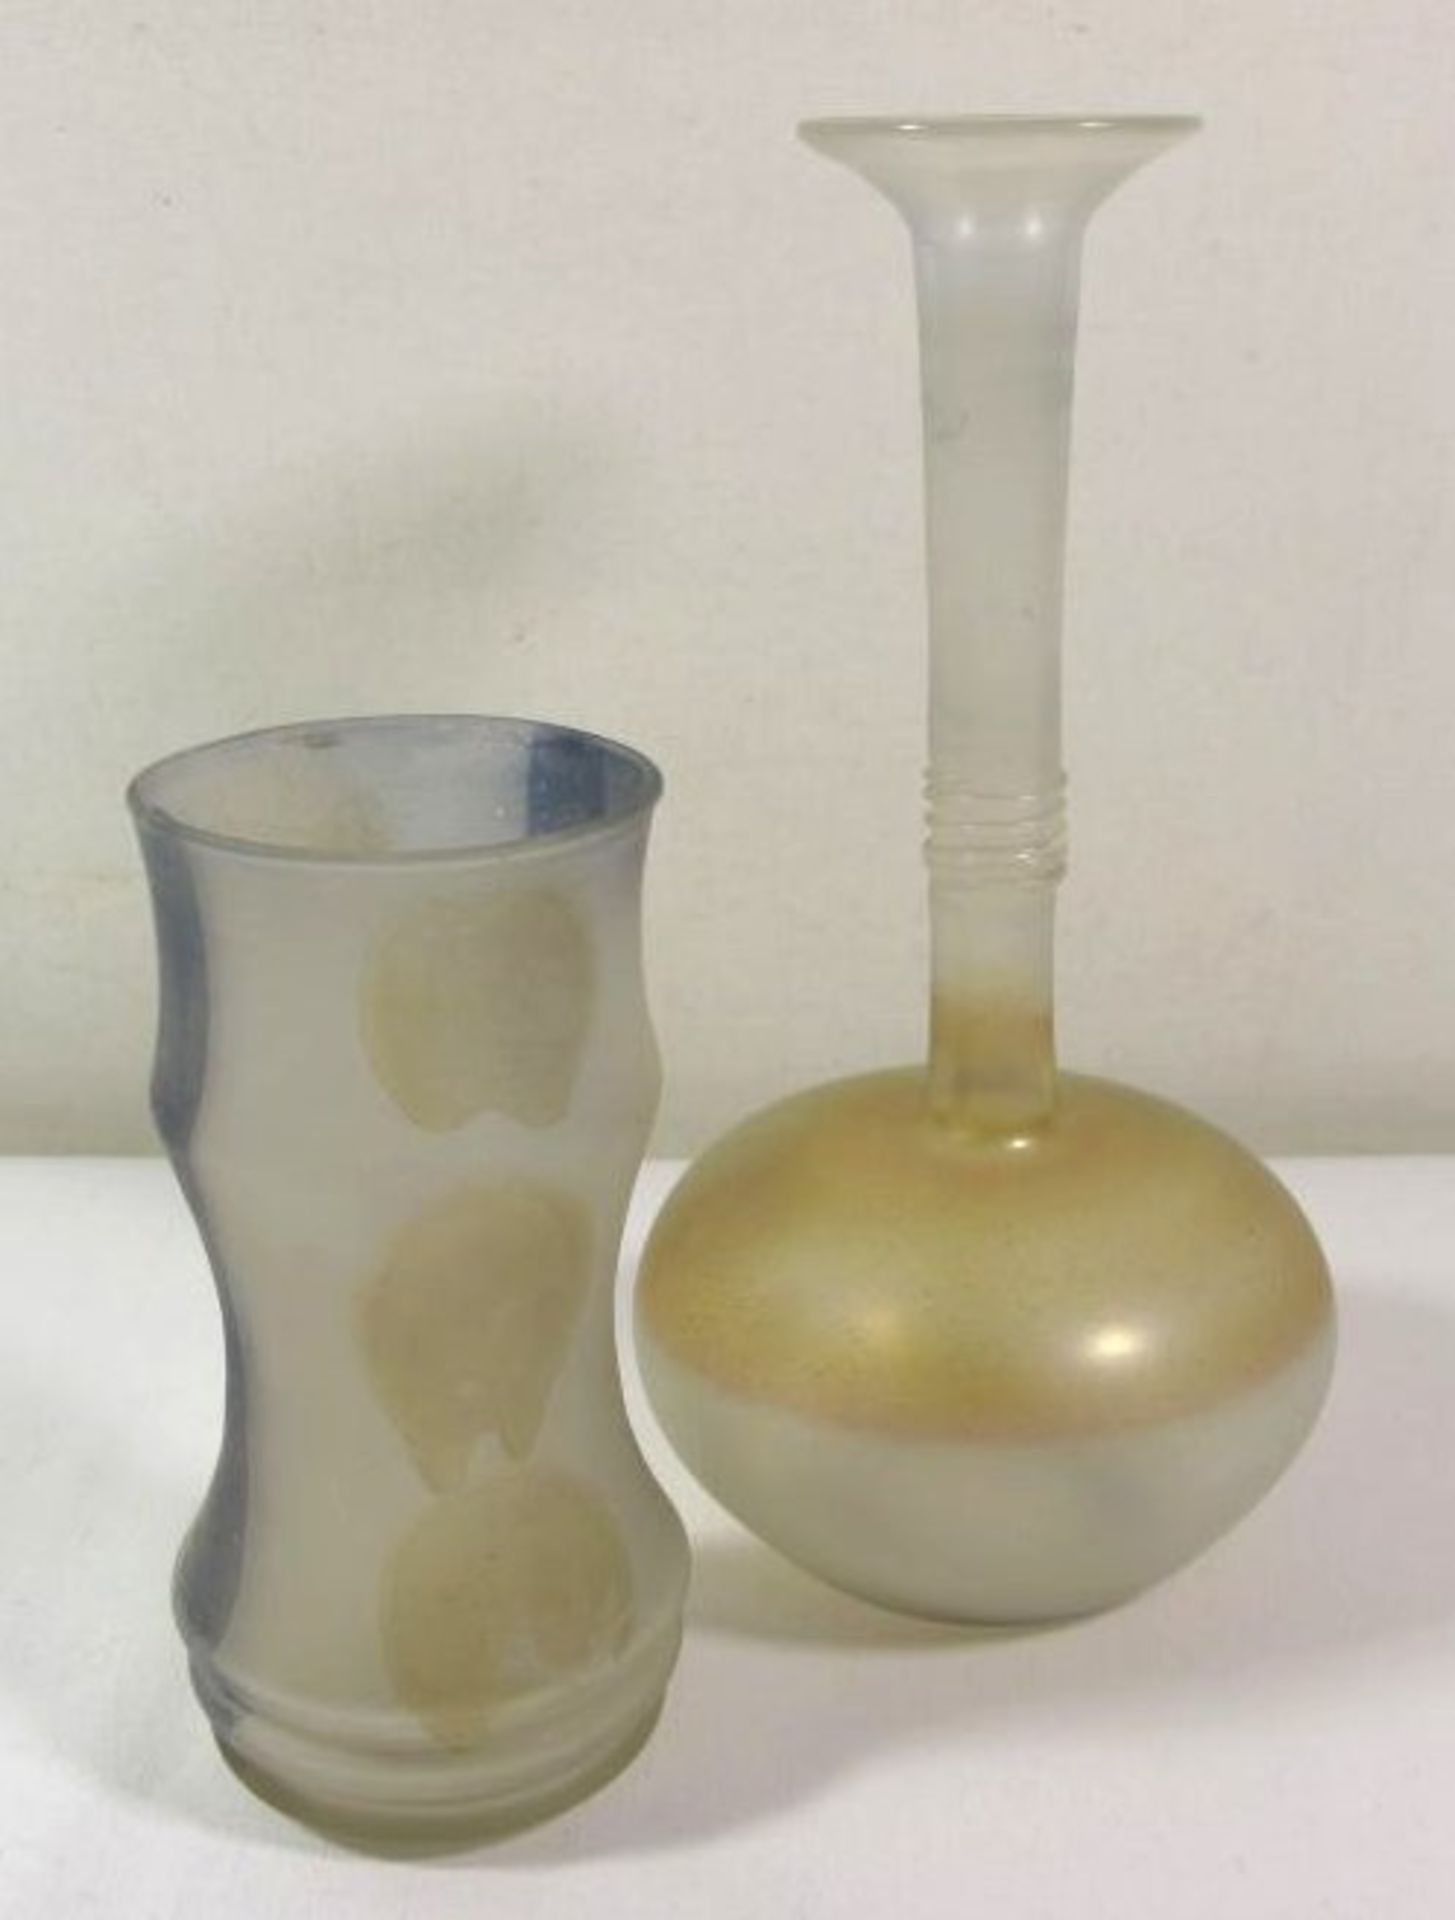 2 Teile Kunstglas, leichtes Glas, farbige Einschmelzungen, satiniert, H-19cm und H-12,5cm.